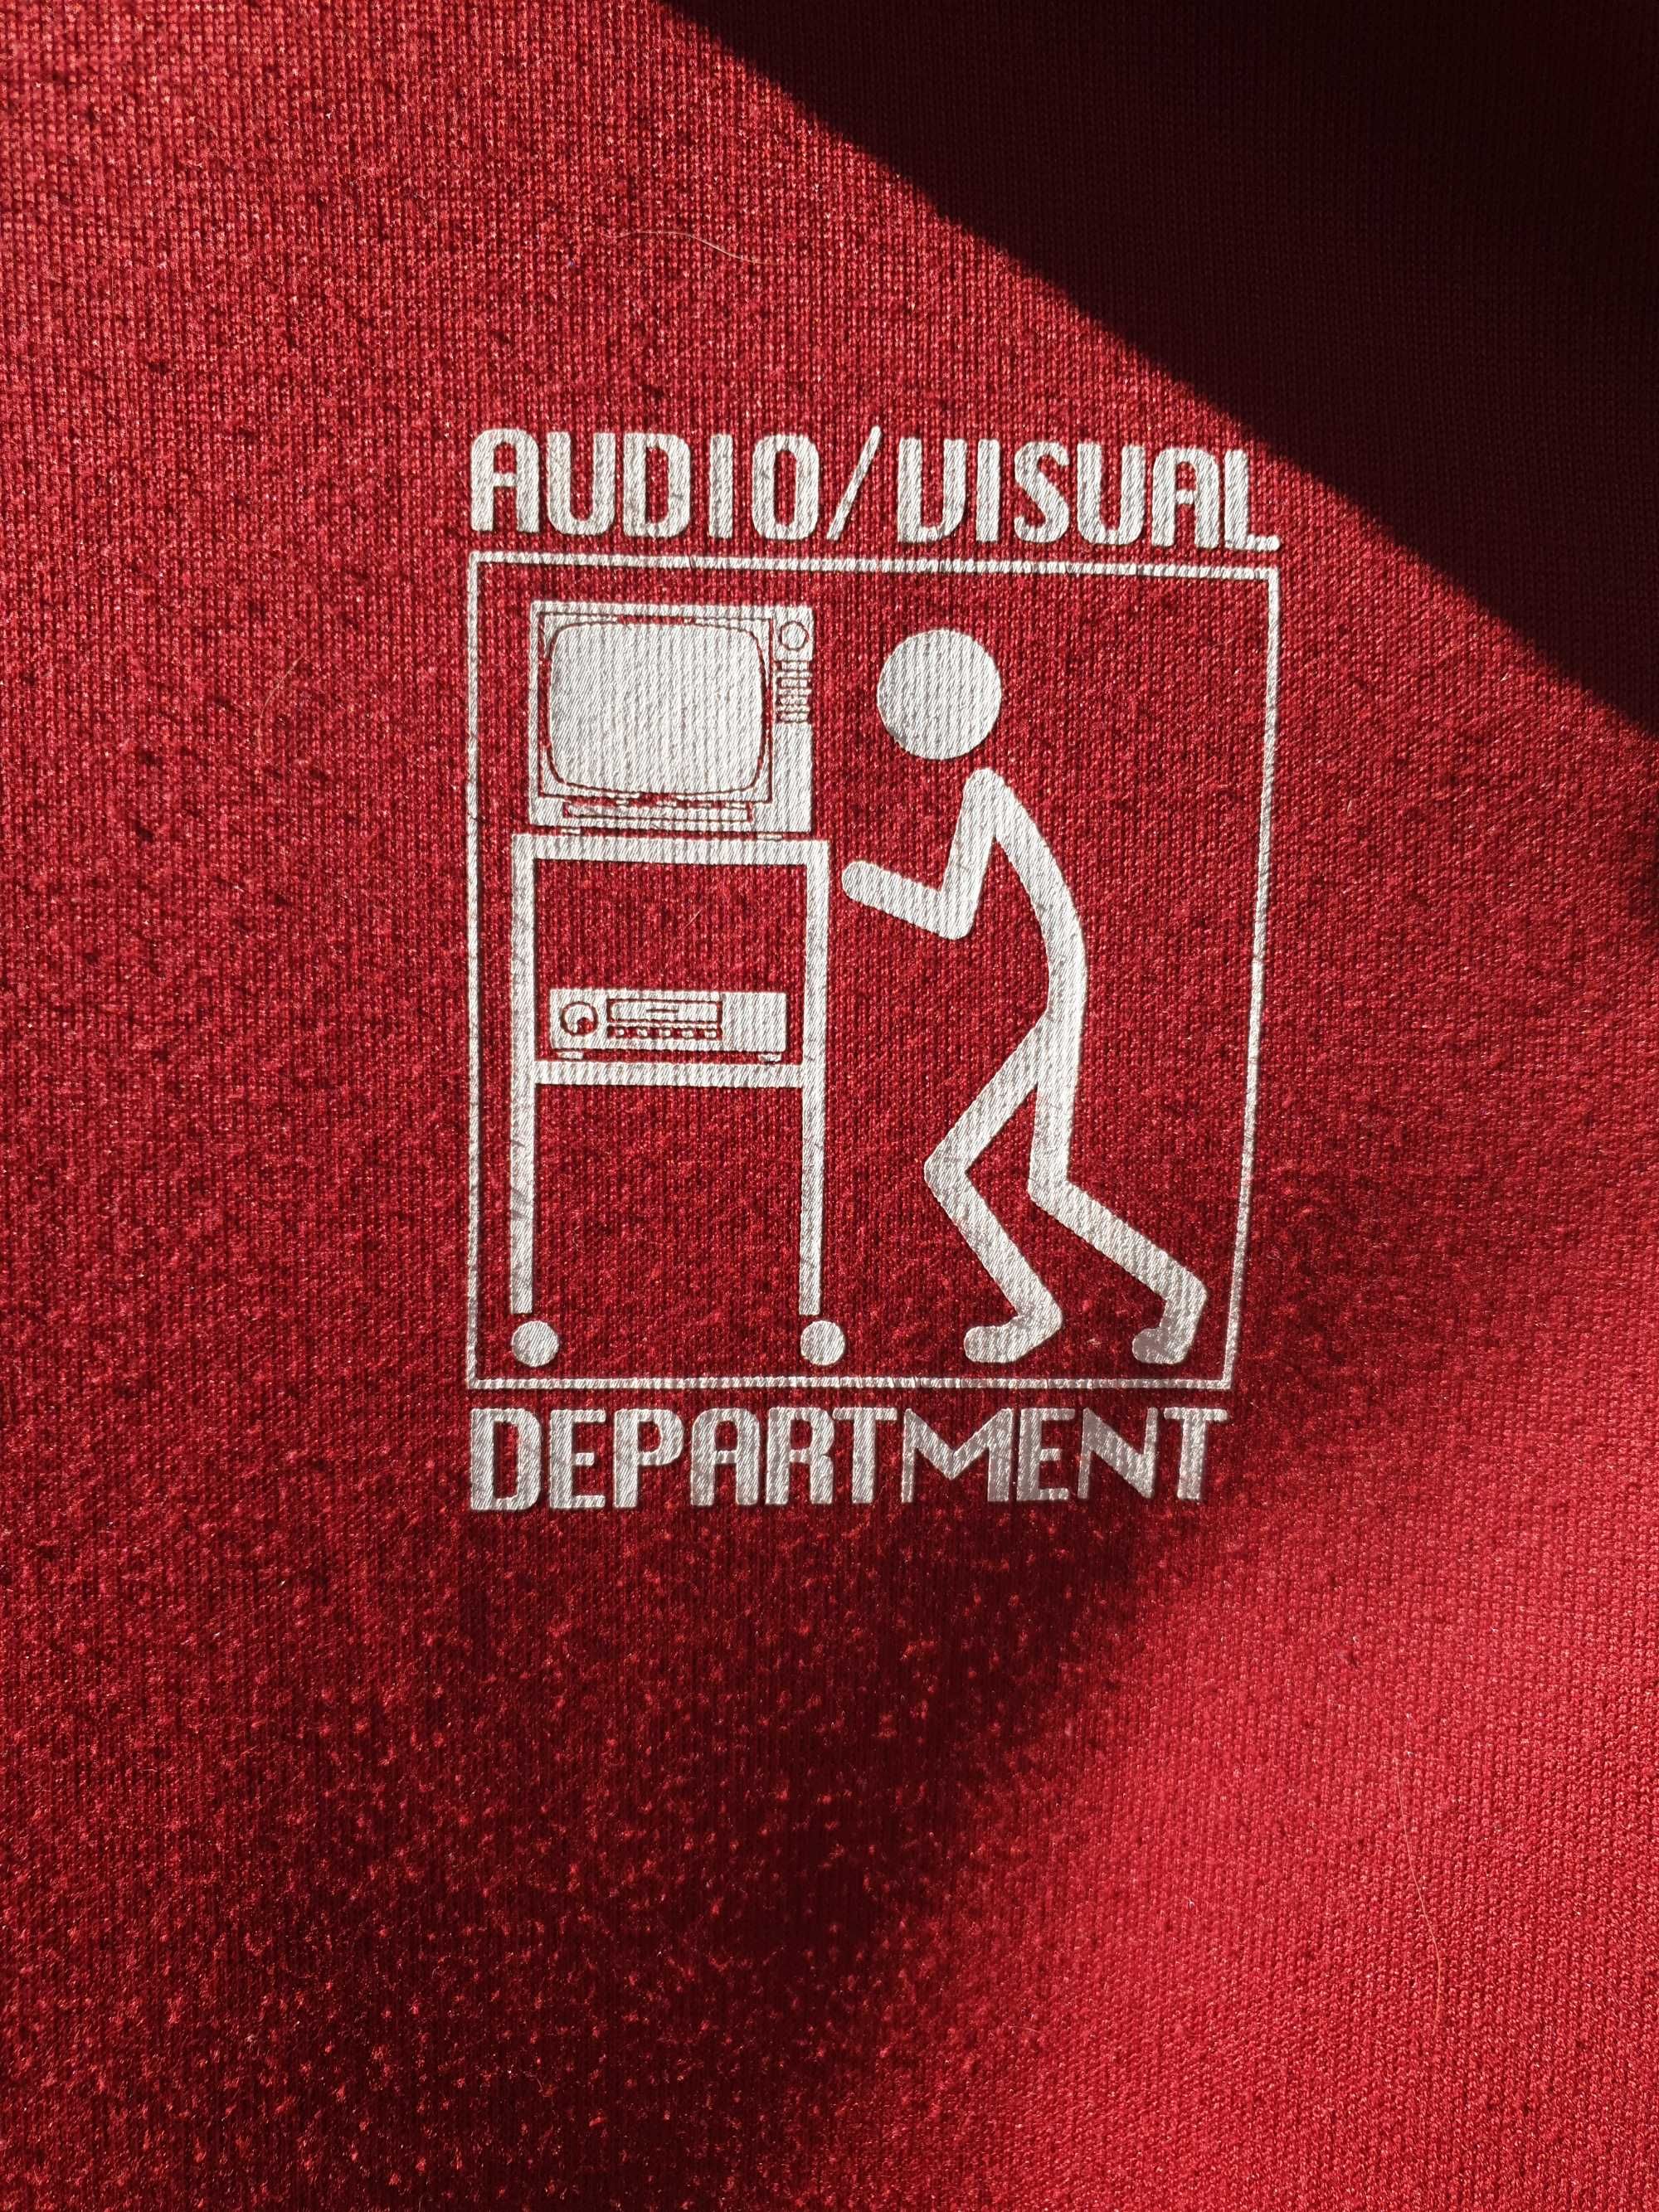 Bluza retro Audiovisual Department